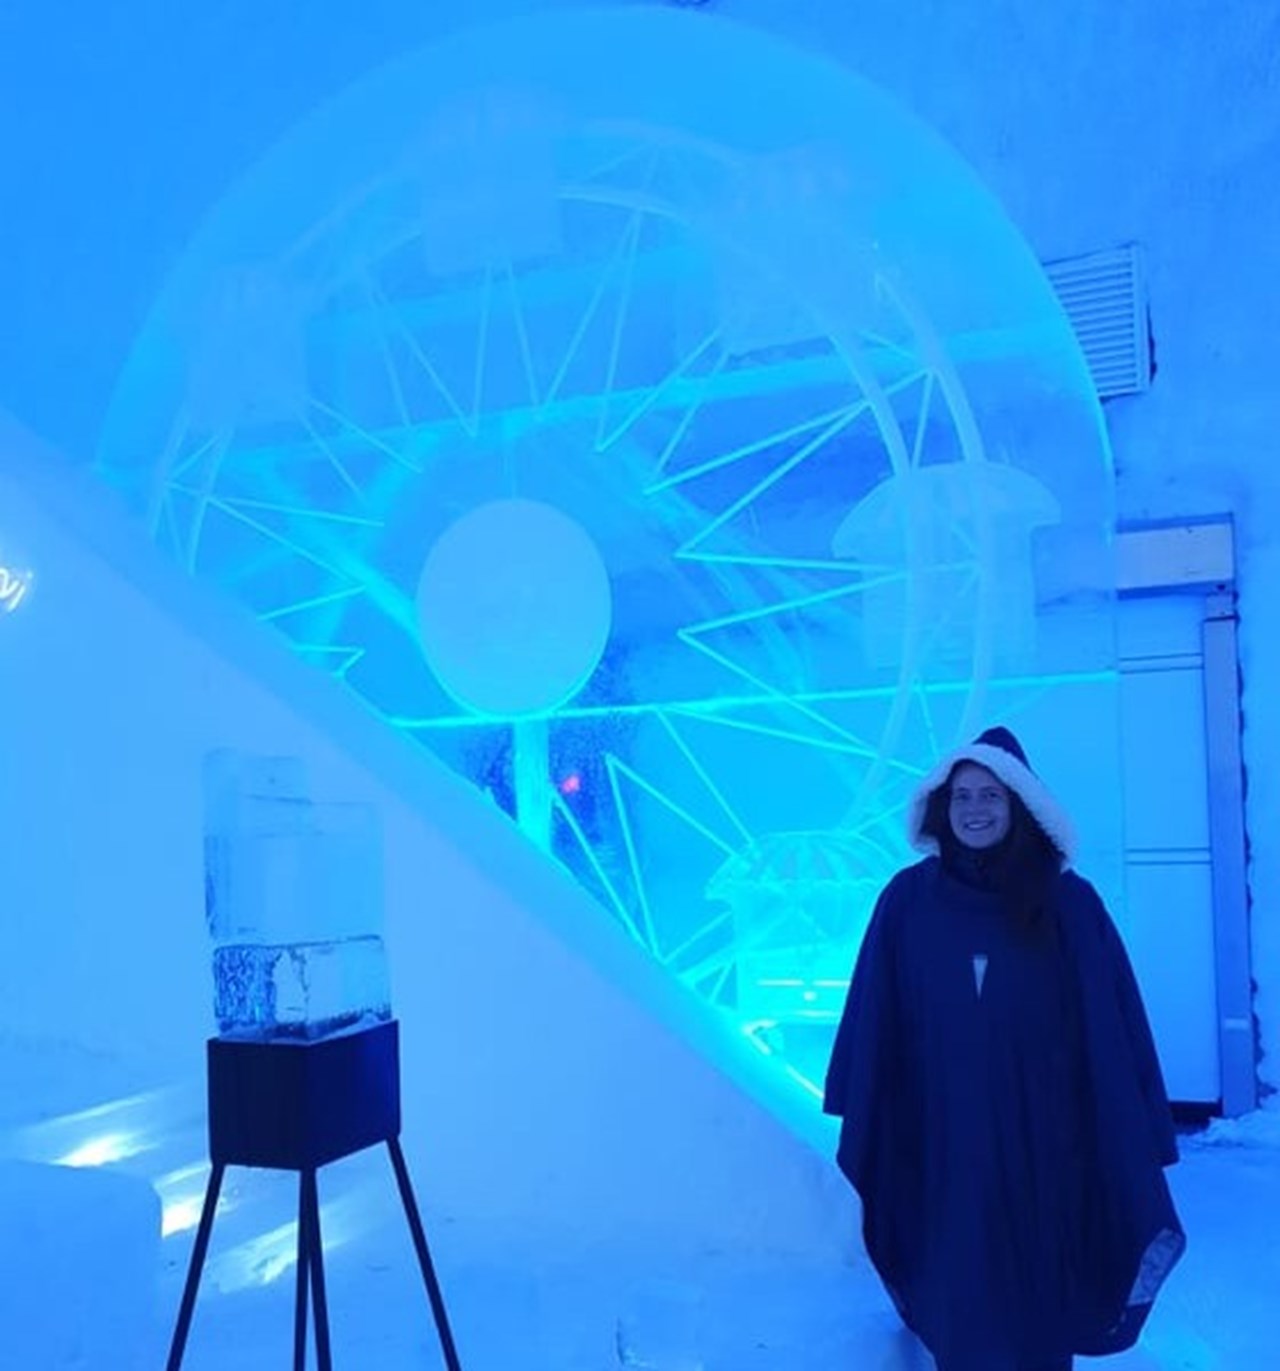 Moa Mattson, Doktorand vid Institutionen för tillämpad fysik och elektronik, Umeå Universitet står iklädd en lång mörk poncho med pälskrage vid en isformation 'Pariserhjul' inne i ishotellet i Jukkasjärvi.